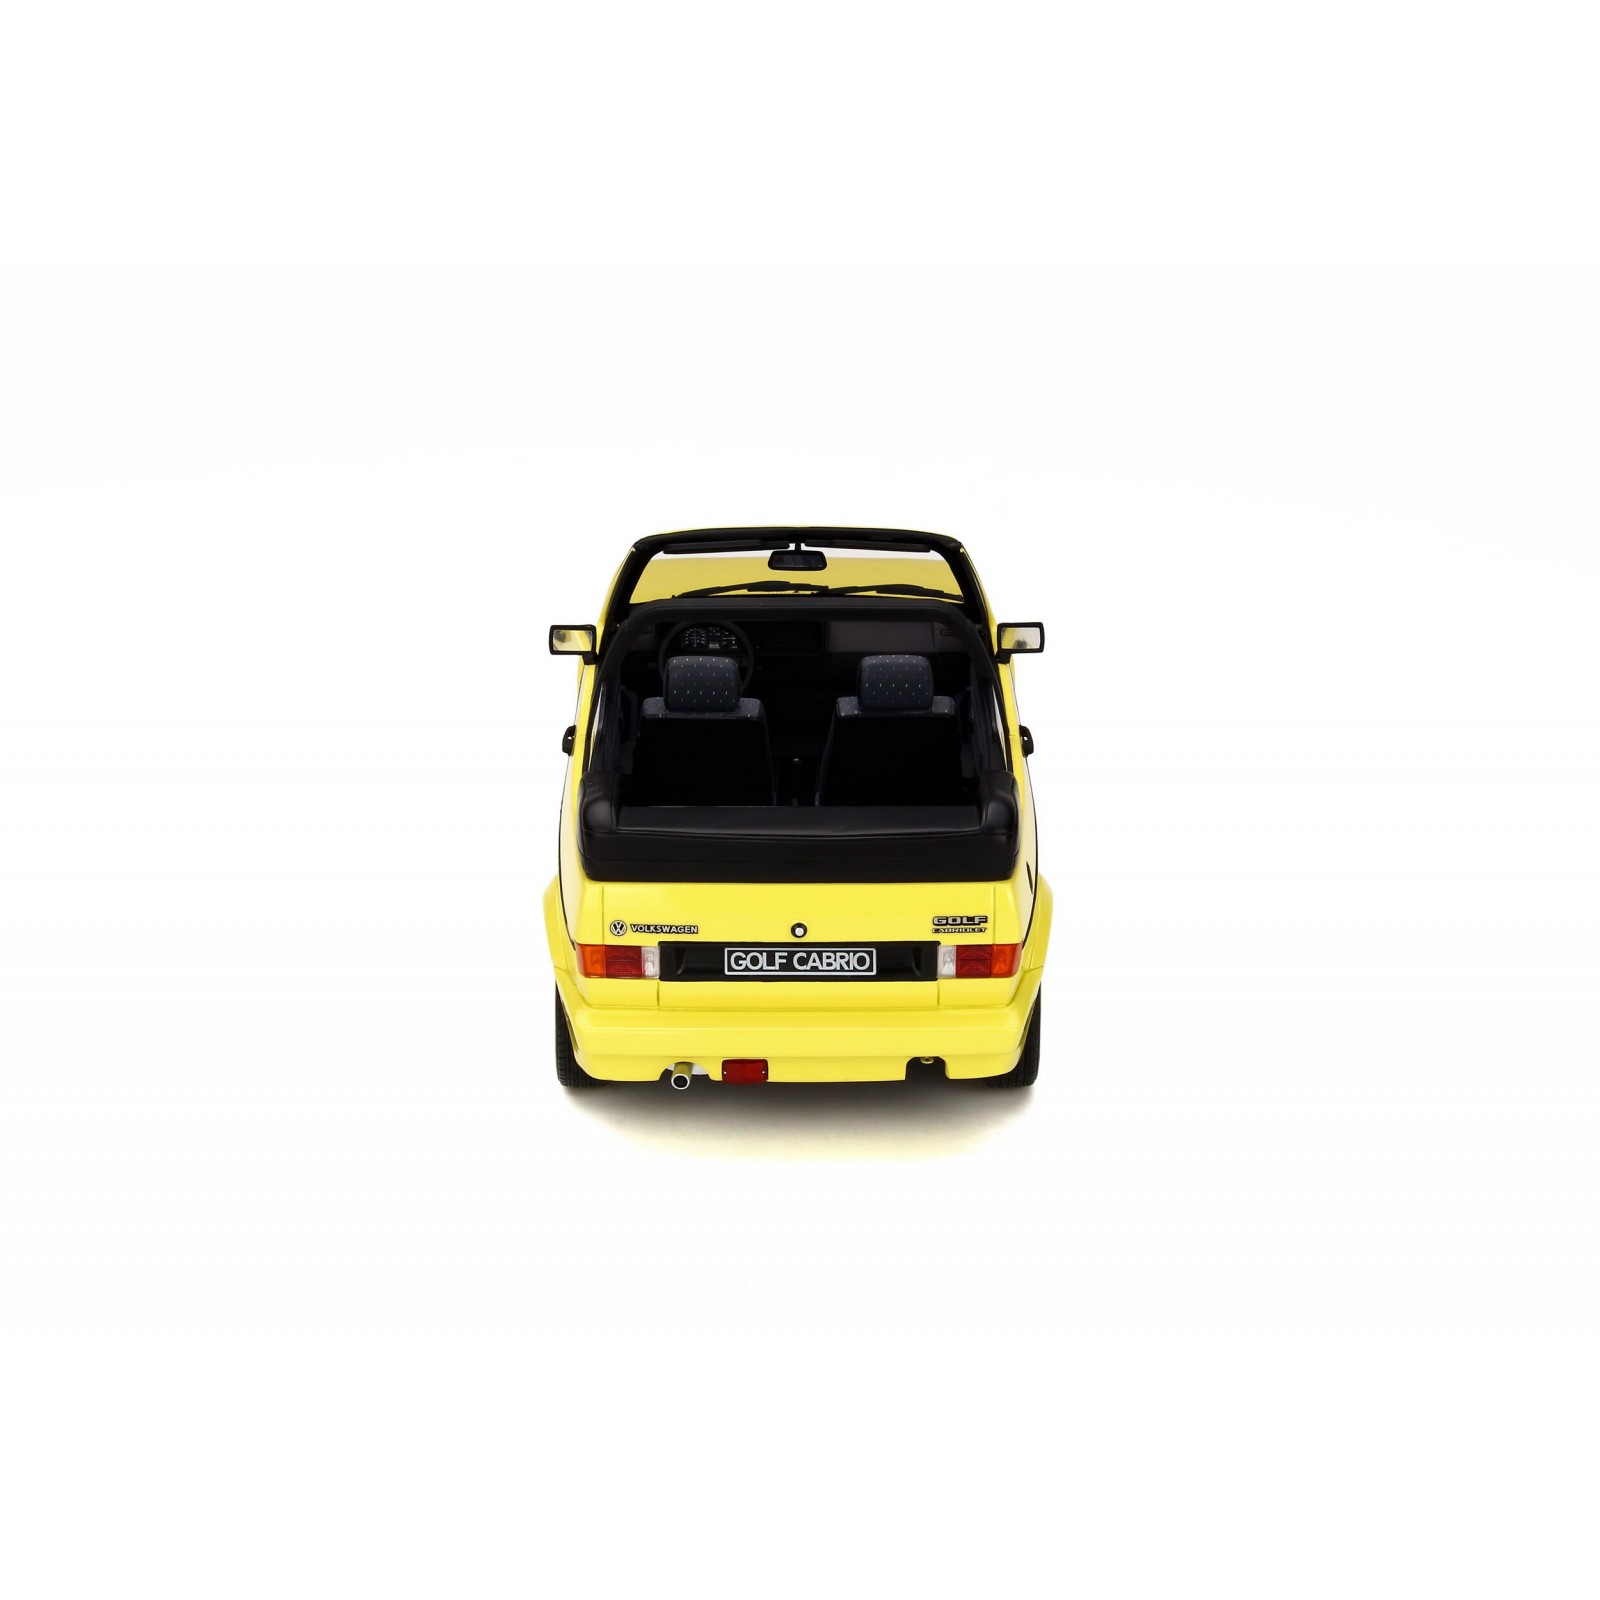 Bâche Voiture pour VW Golf Cabriolet Cabriolet 1979-1993,Protection Tous  Temps Imperméable indéchirable Isolation Thermique Anti UV Antipoussière